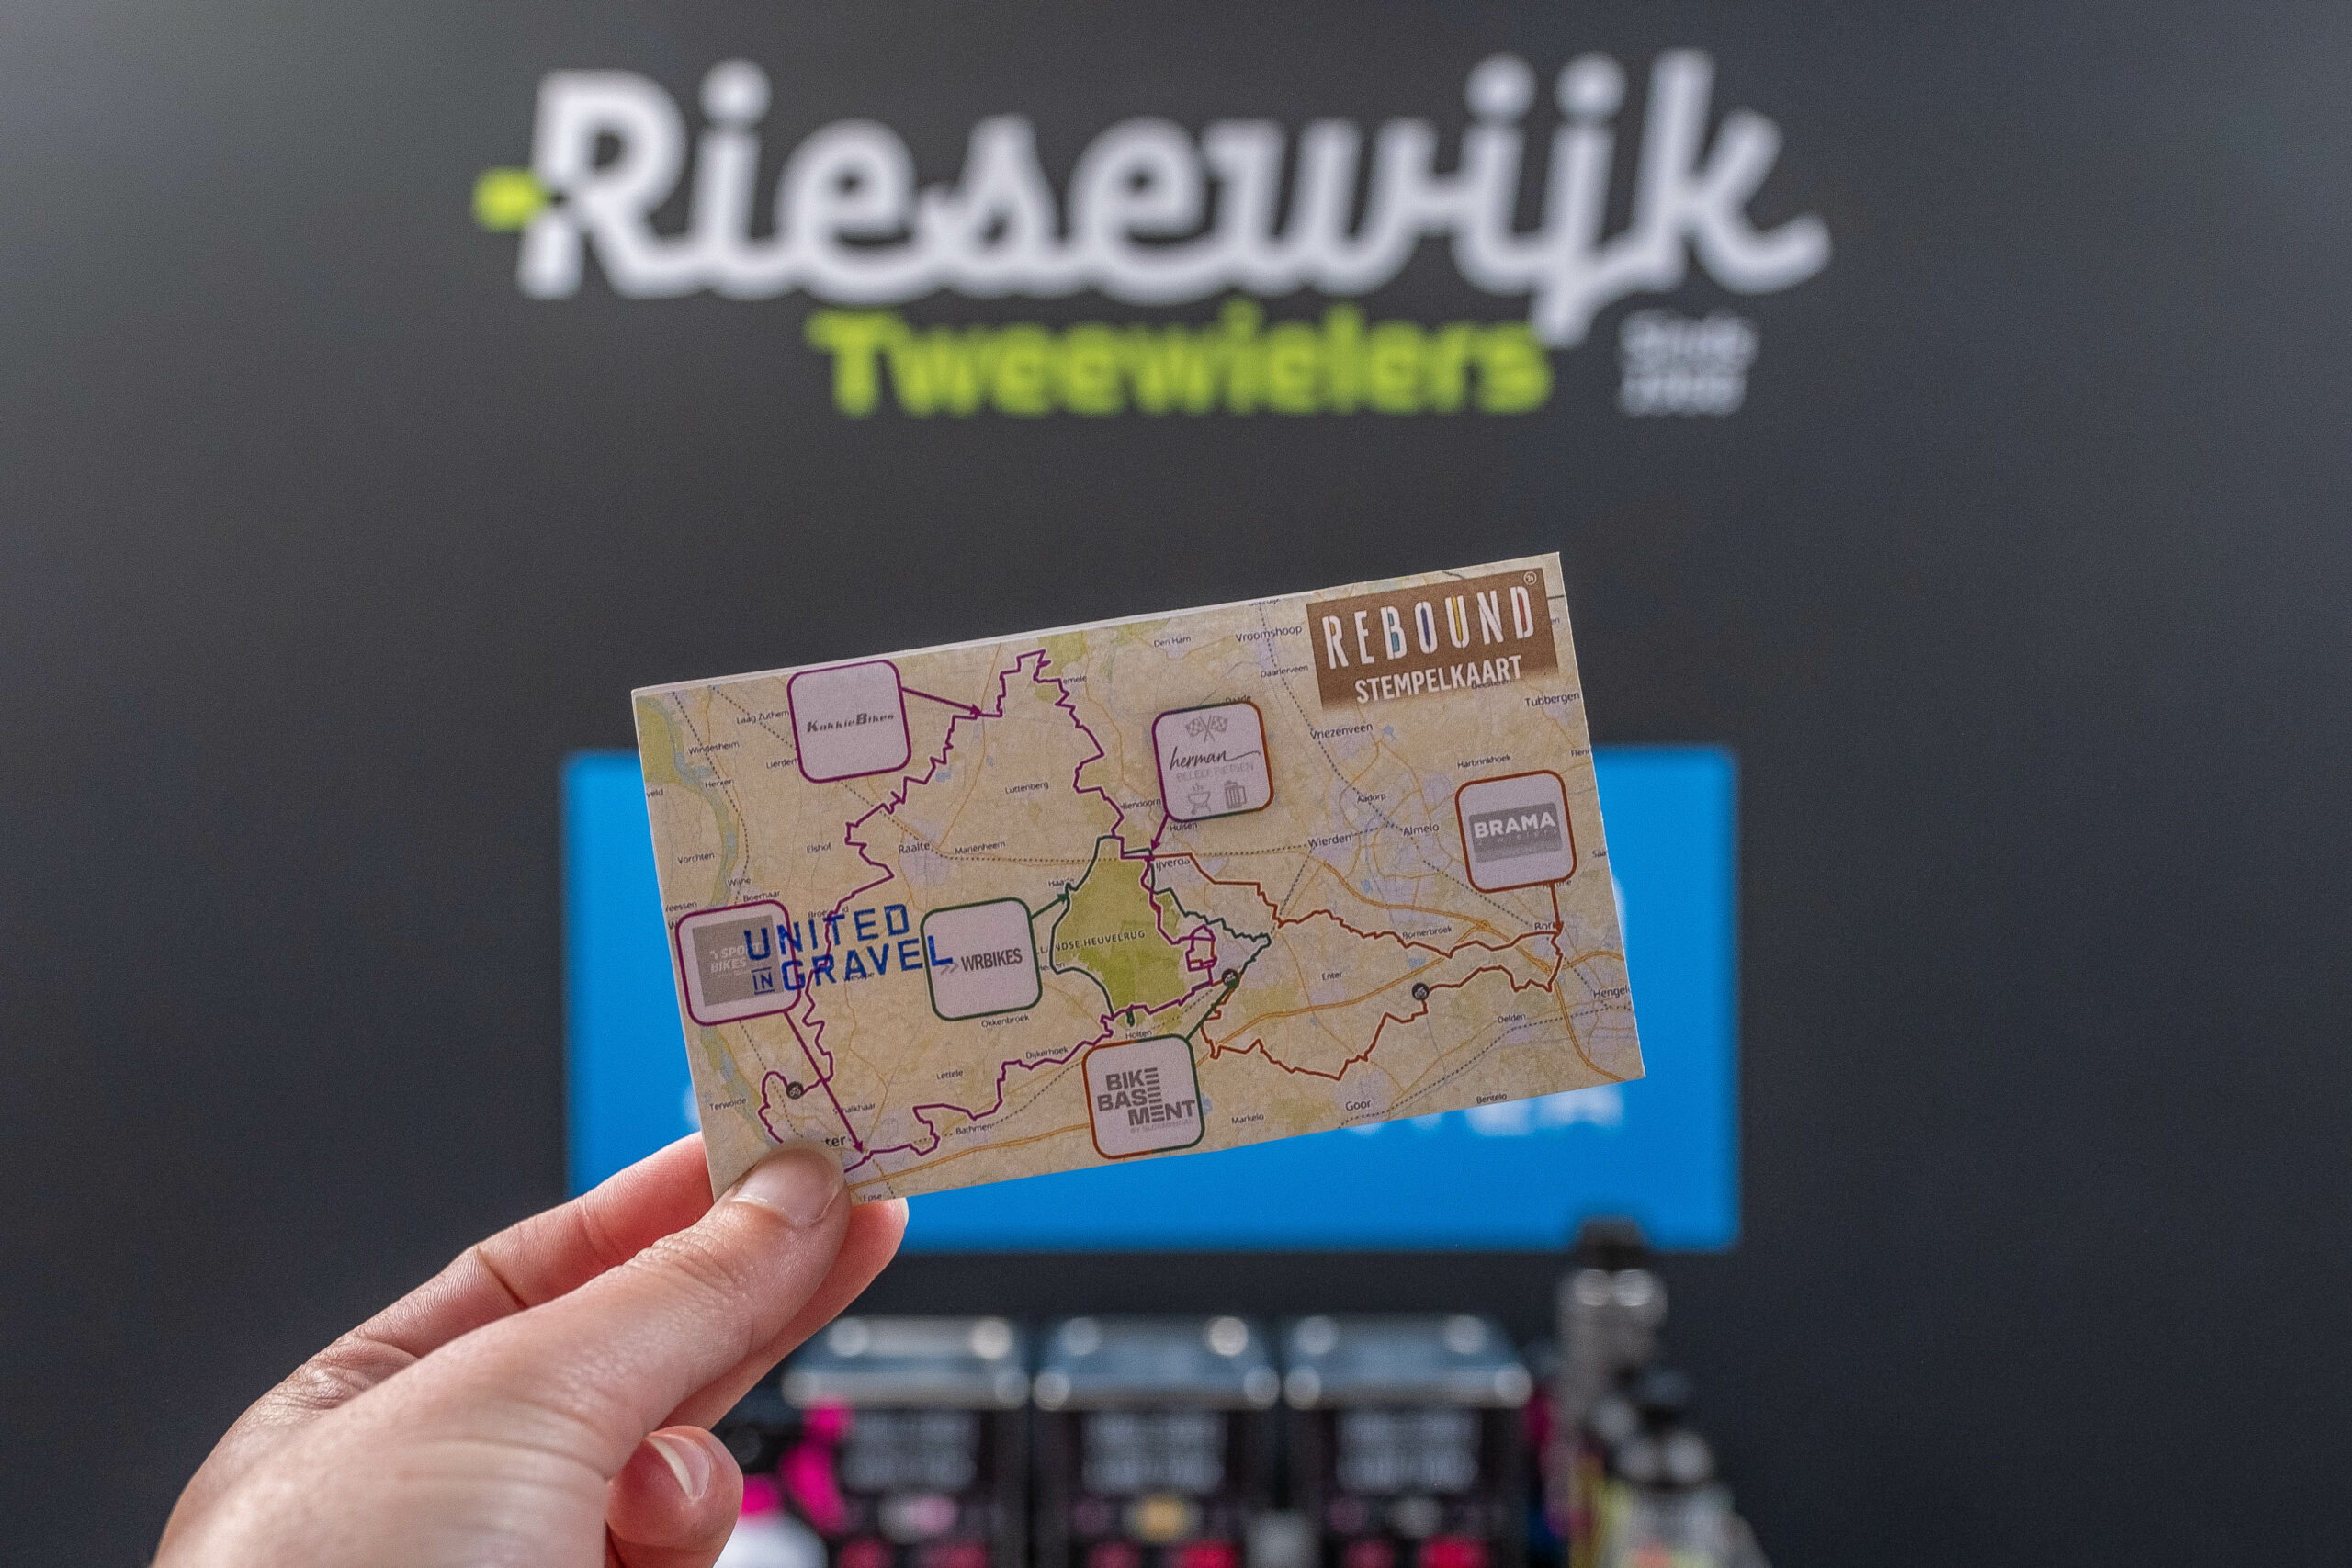 Rebound Strava Ride bij Riesewijk Tweewielers Deventer